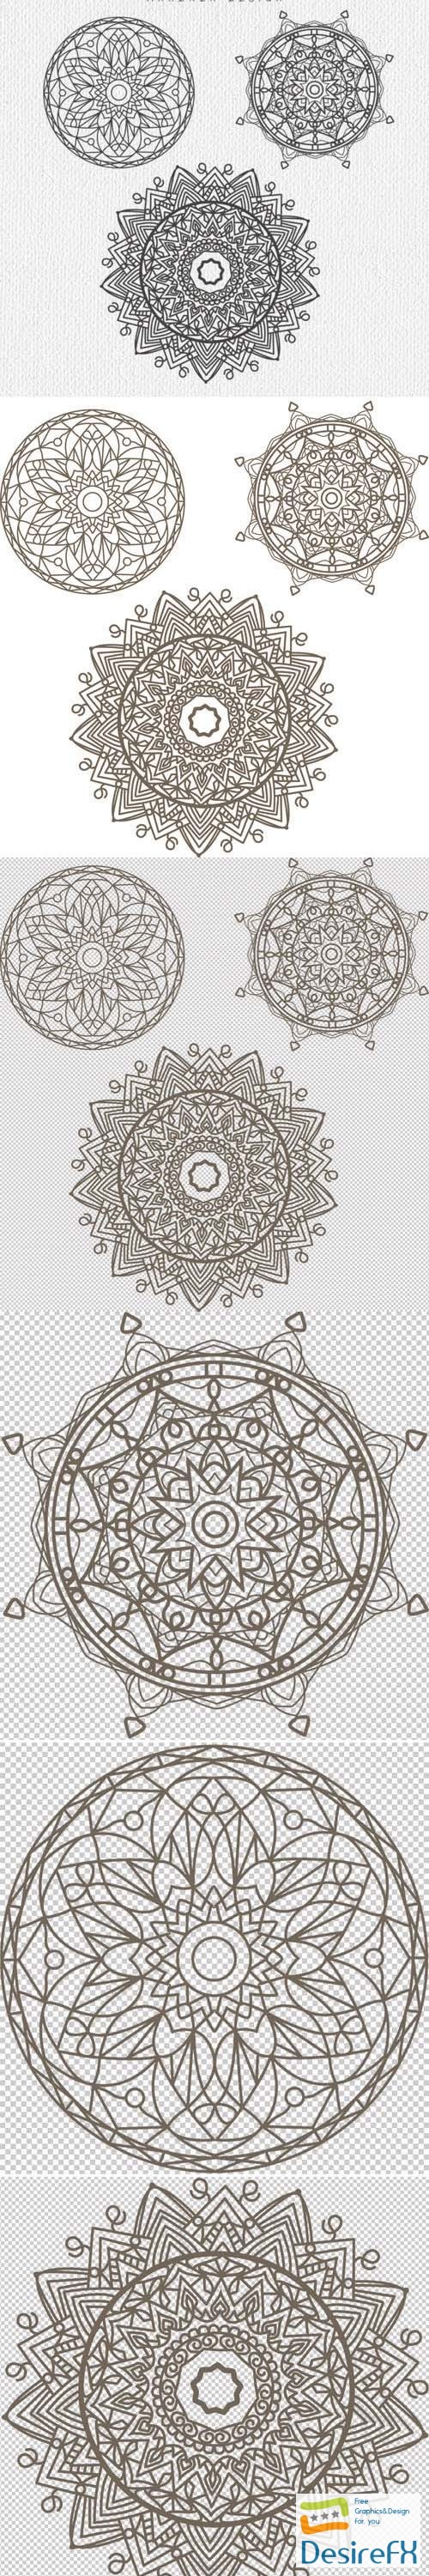 3 Mandala Designs in Vector